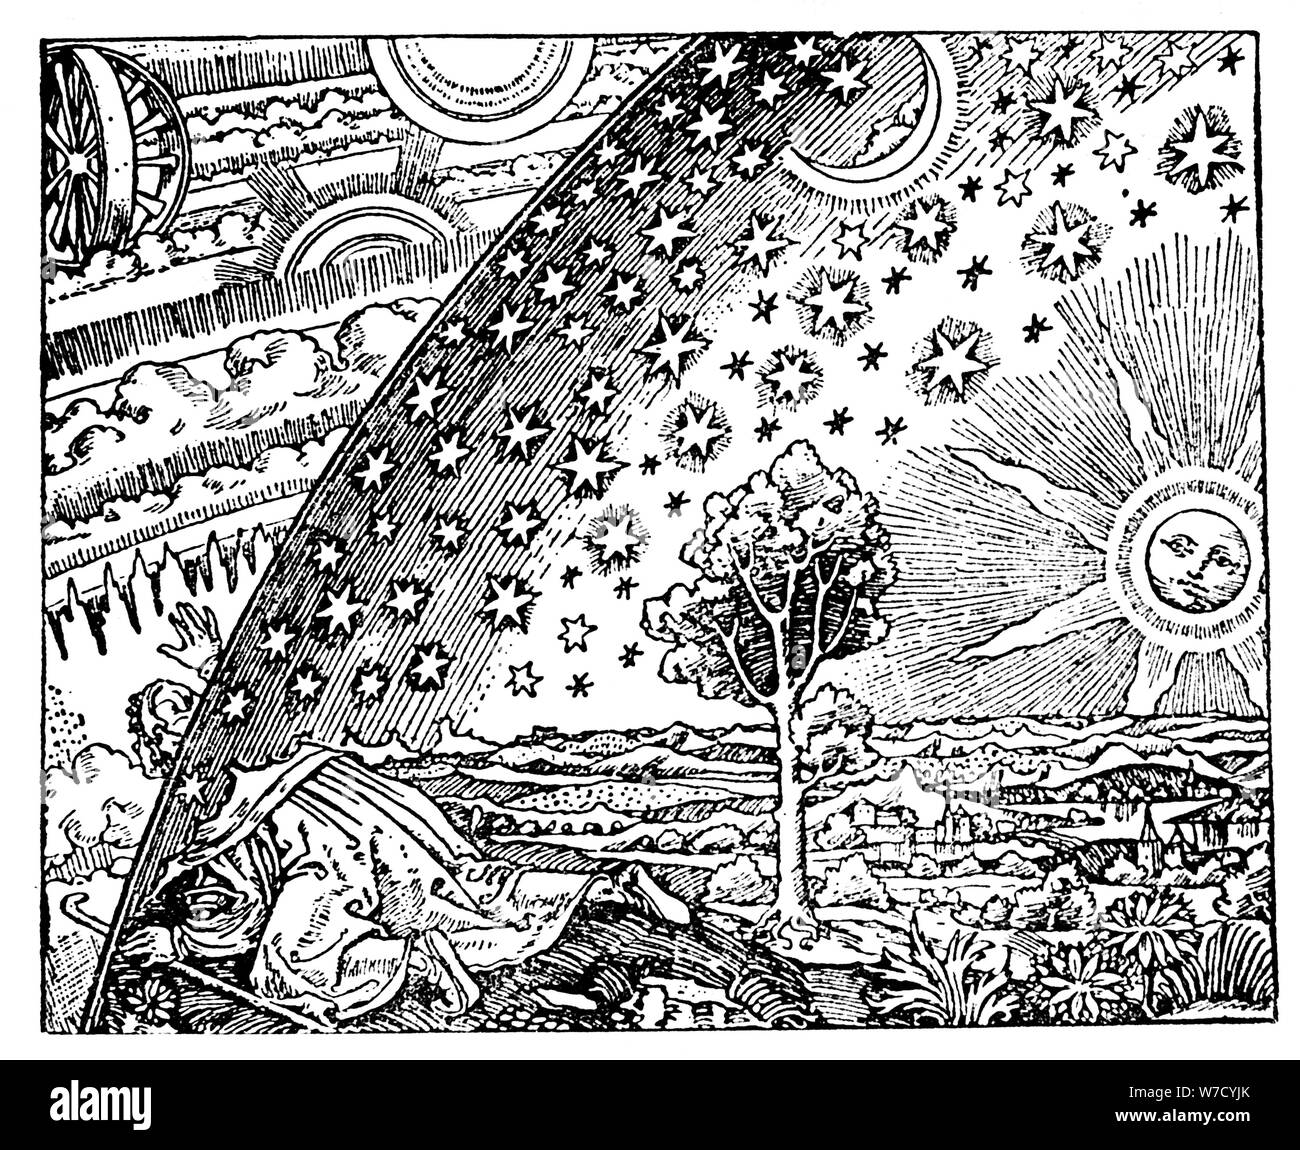 Reconstrucción de una concepción medieval del universo, del siglo XIX?. Artista: Anon Foto de stock